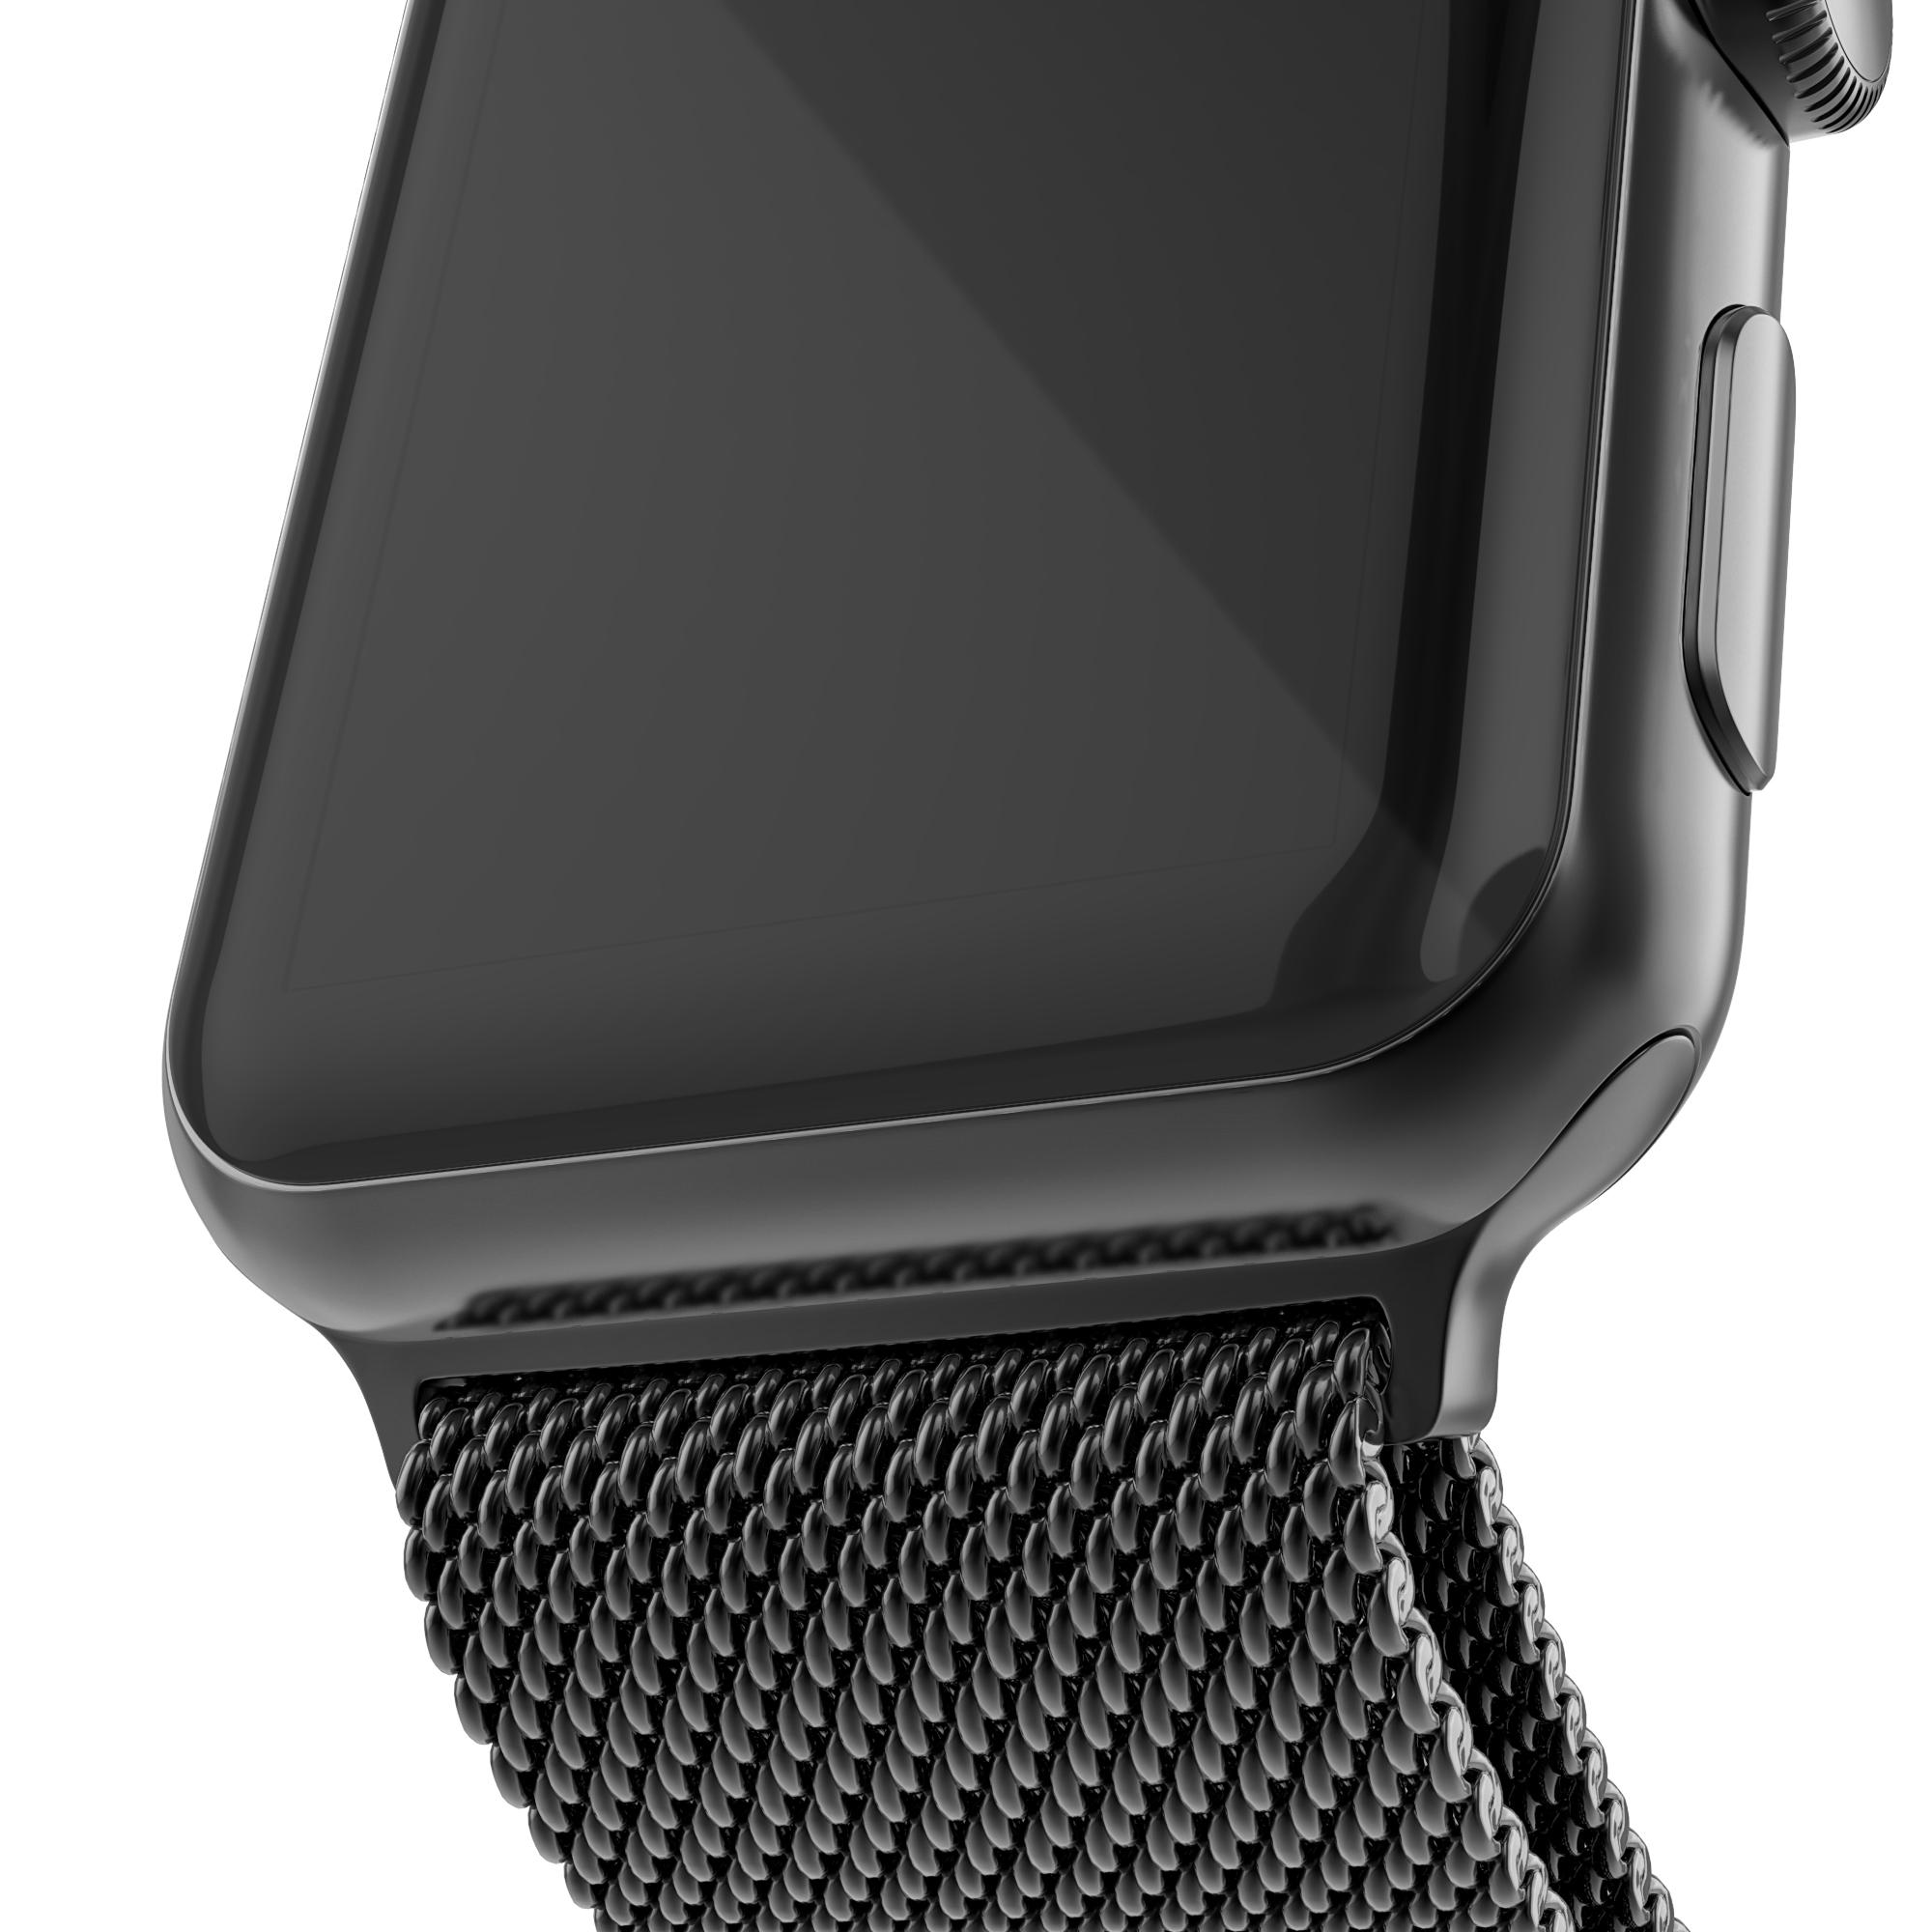 Cinturino in maglia milanese per Apple Watch 42mm, nero